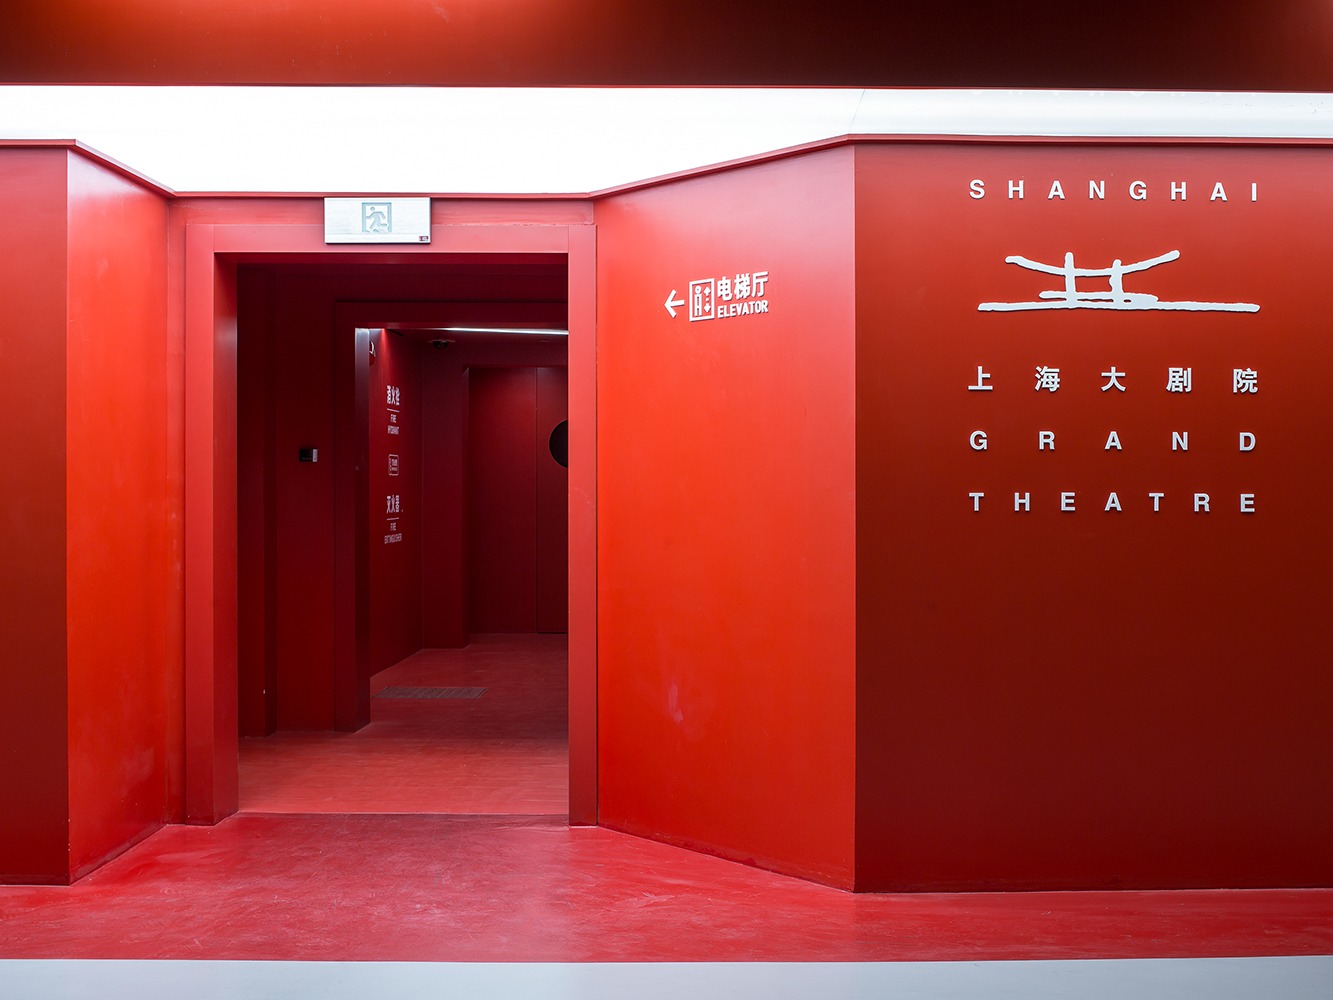 上海大剧院地下车库 - 导视及环境图形设计